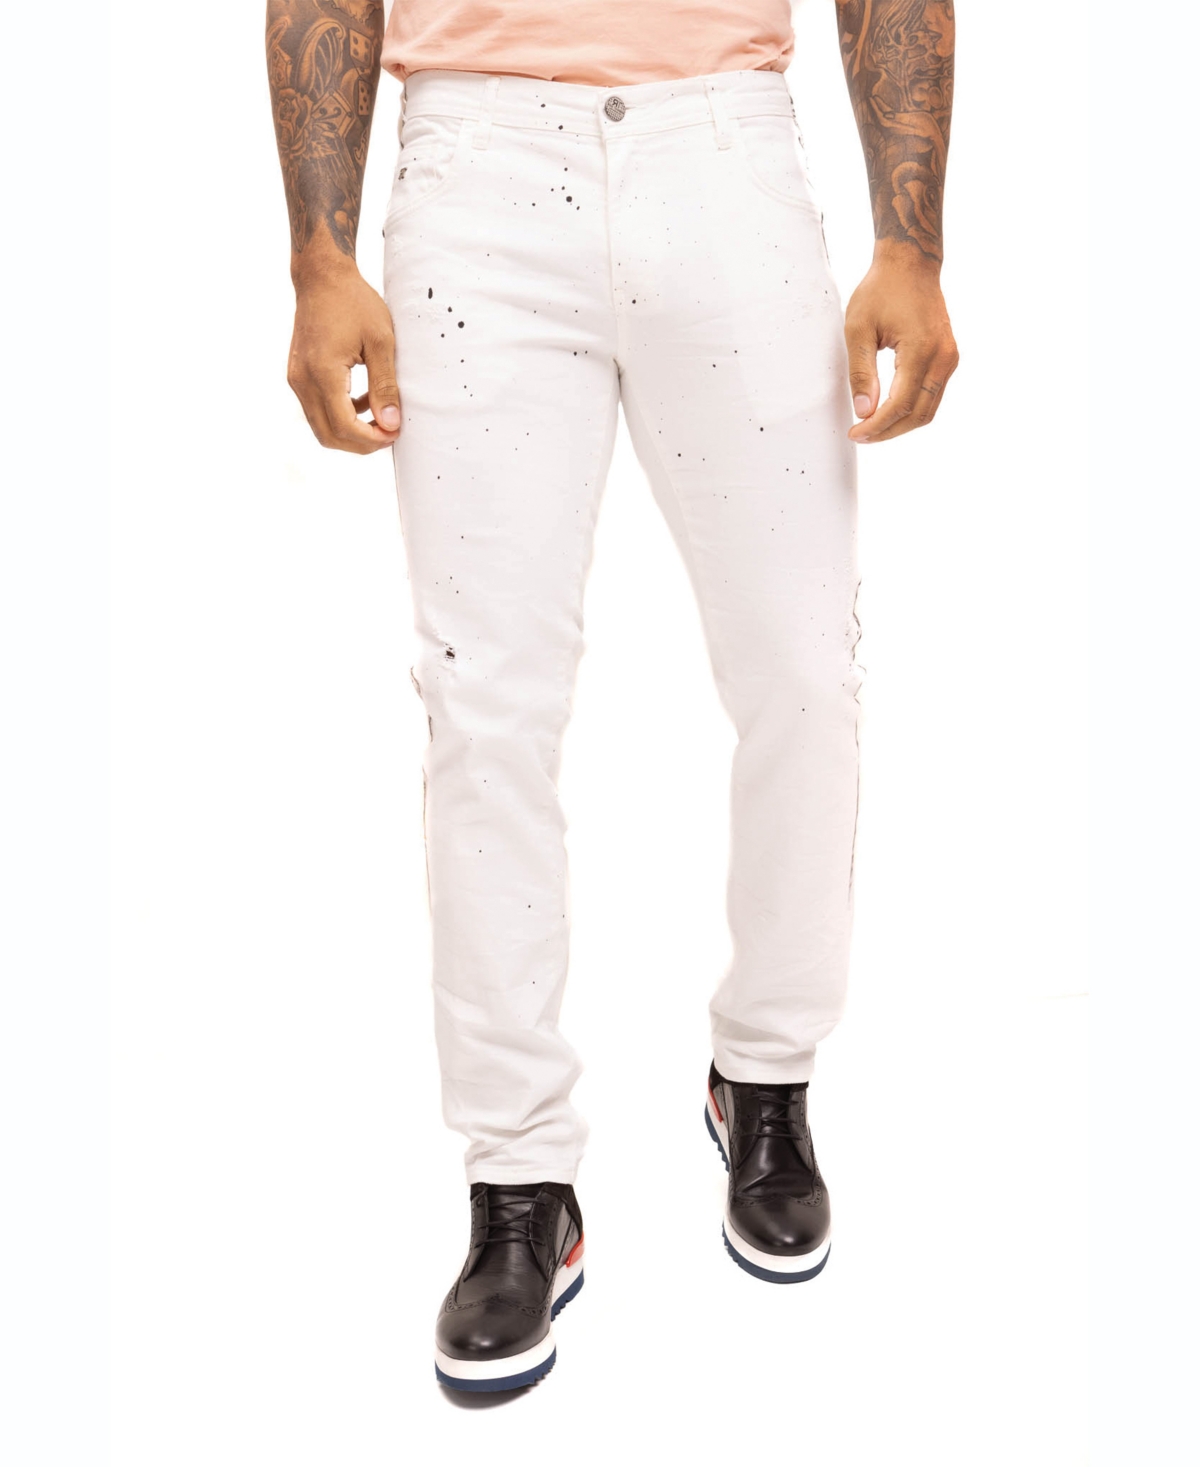 Men's Modern Splattered Stripe Jeans - White